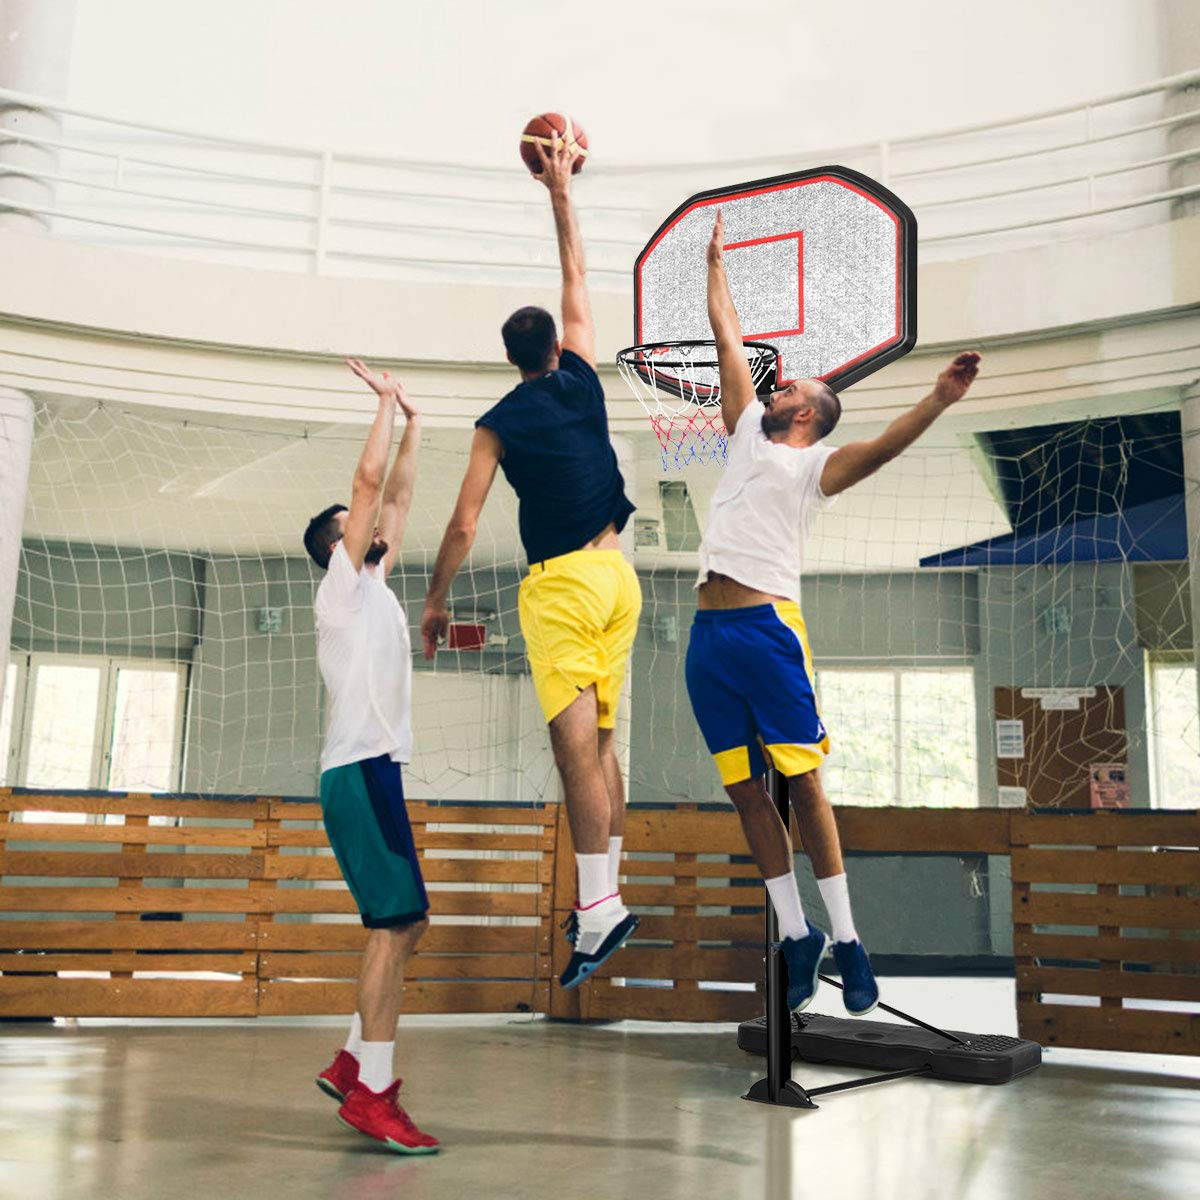 Giantex Portable Basketball Hoop 10 Ft Indoor Outdoor Adjustable Height 6.5'-10'